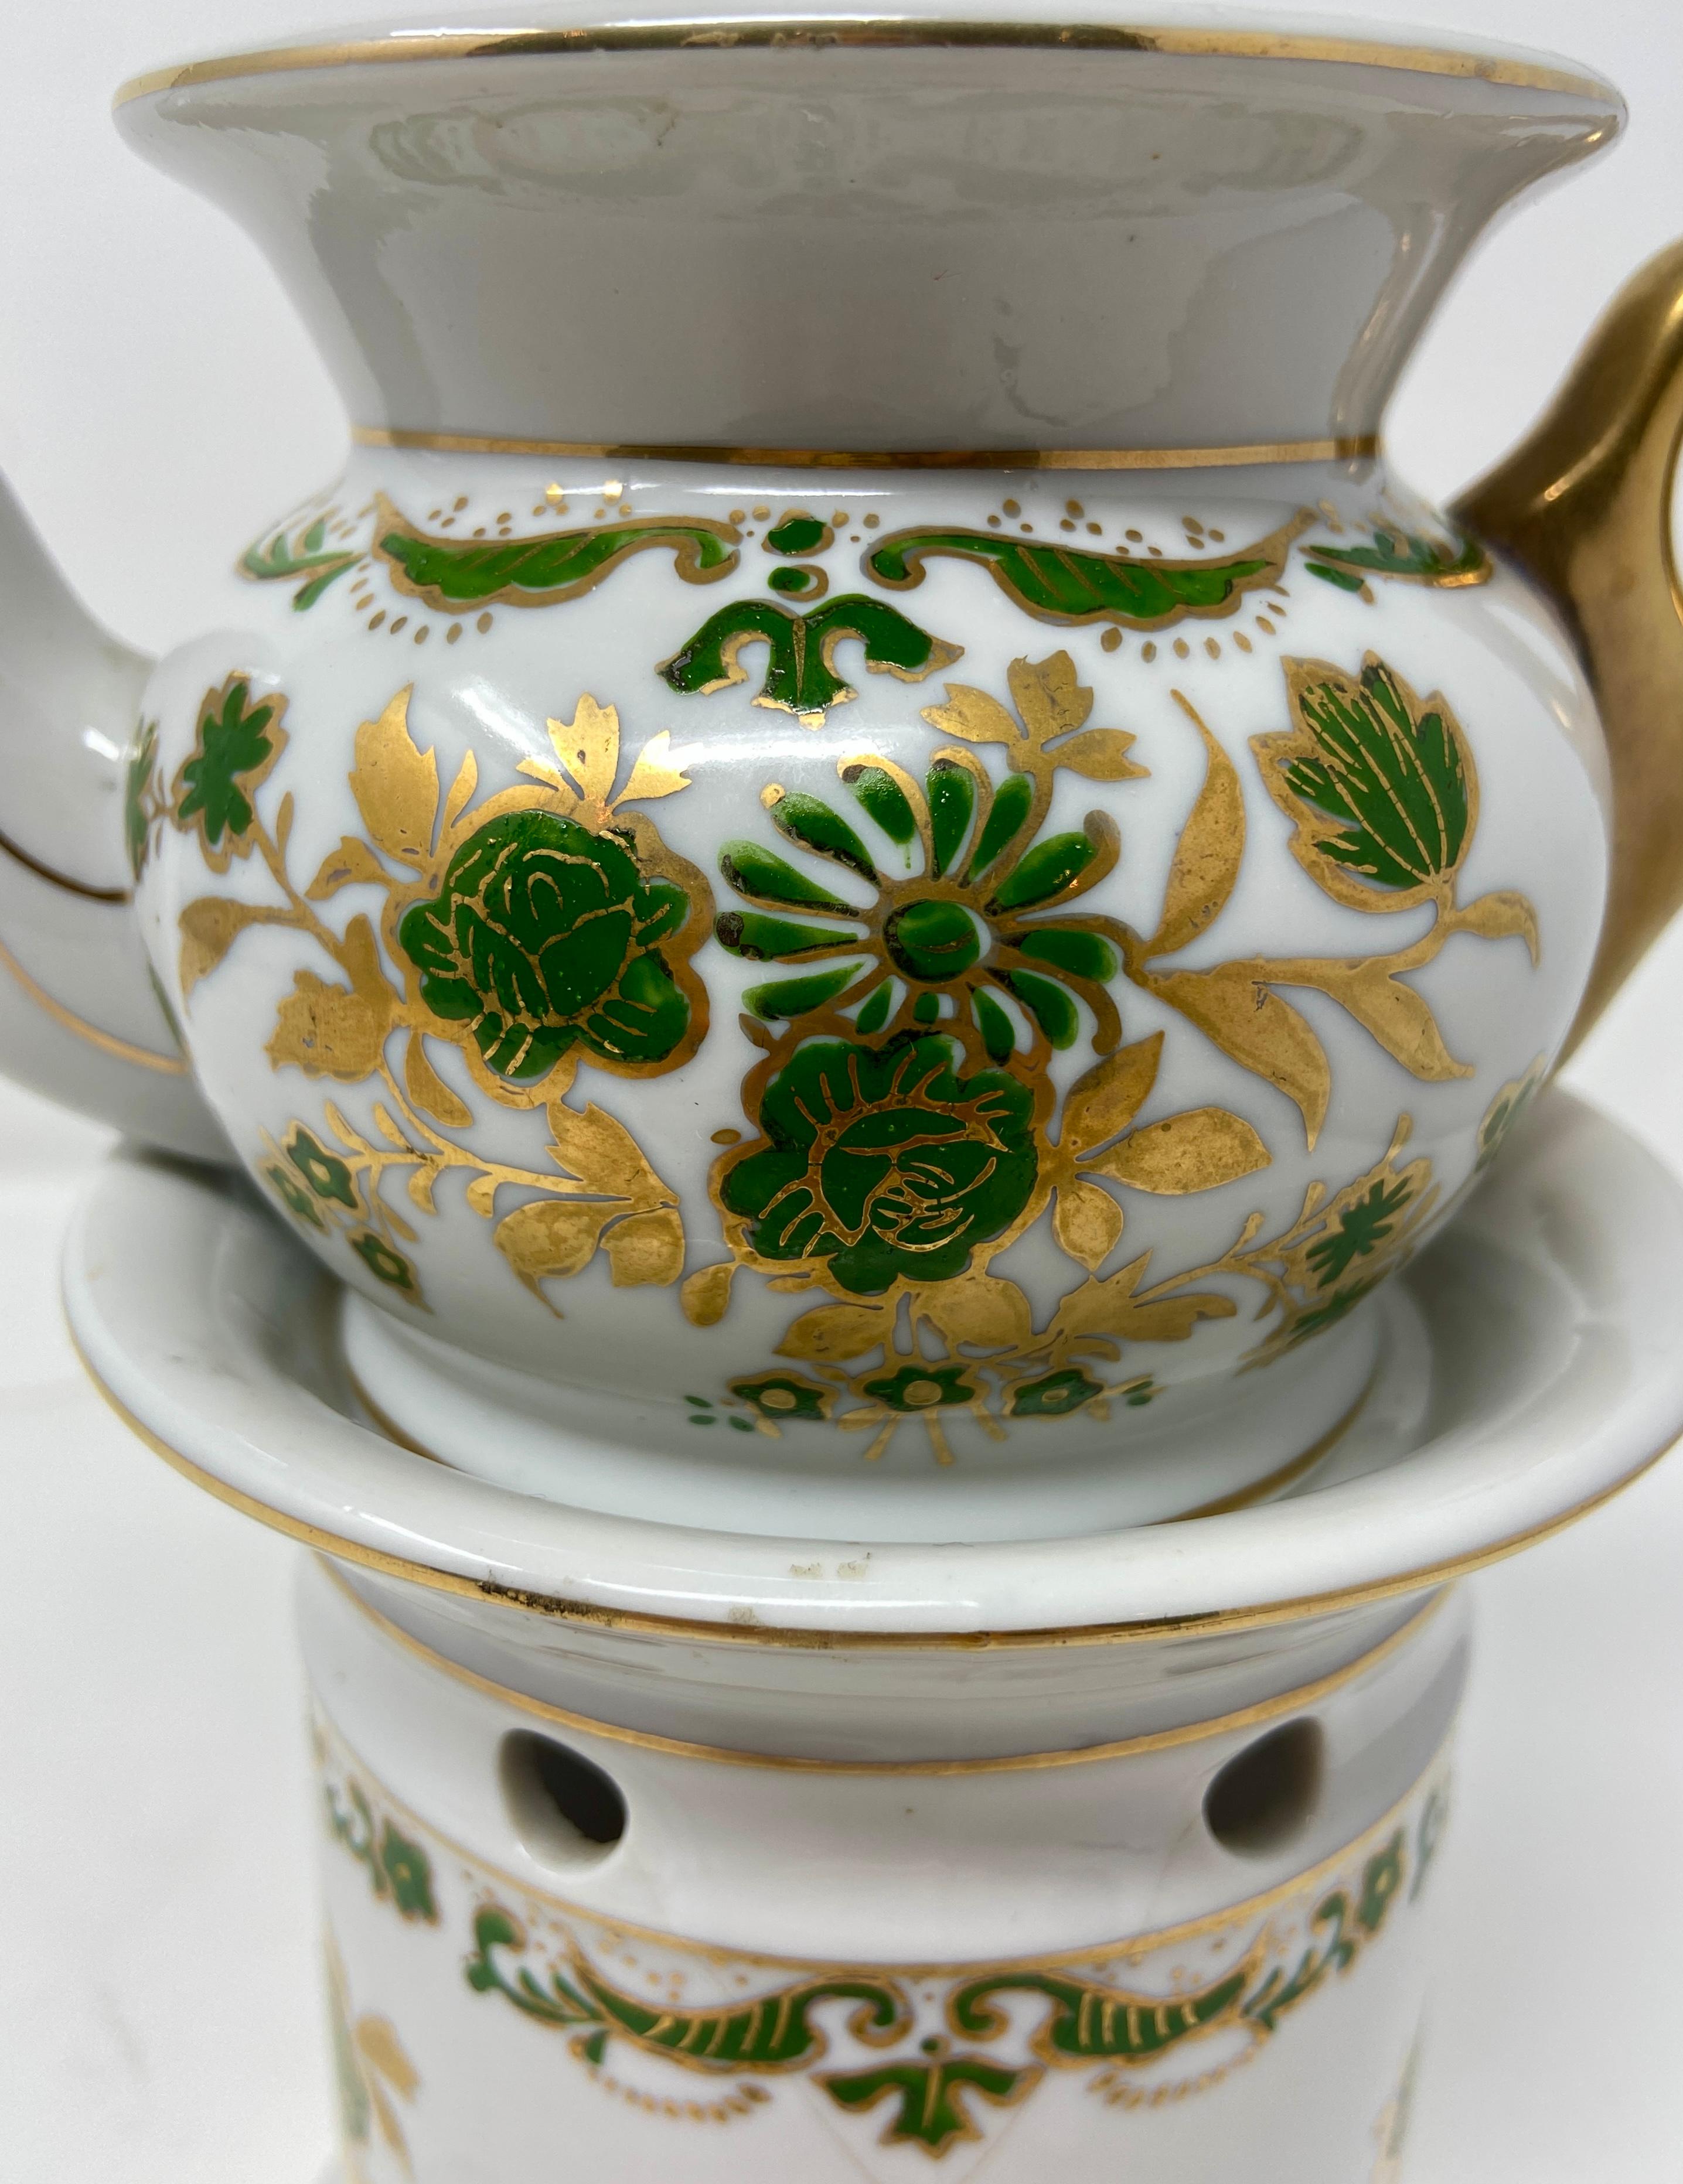 Veilleuse en porcelaine française du 19e siècle, blanche, verte et dorée, de style 